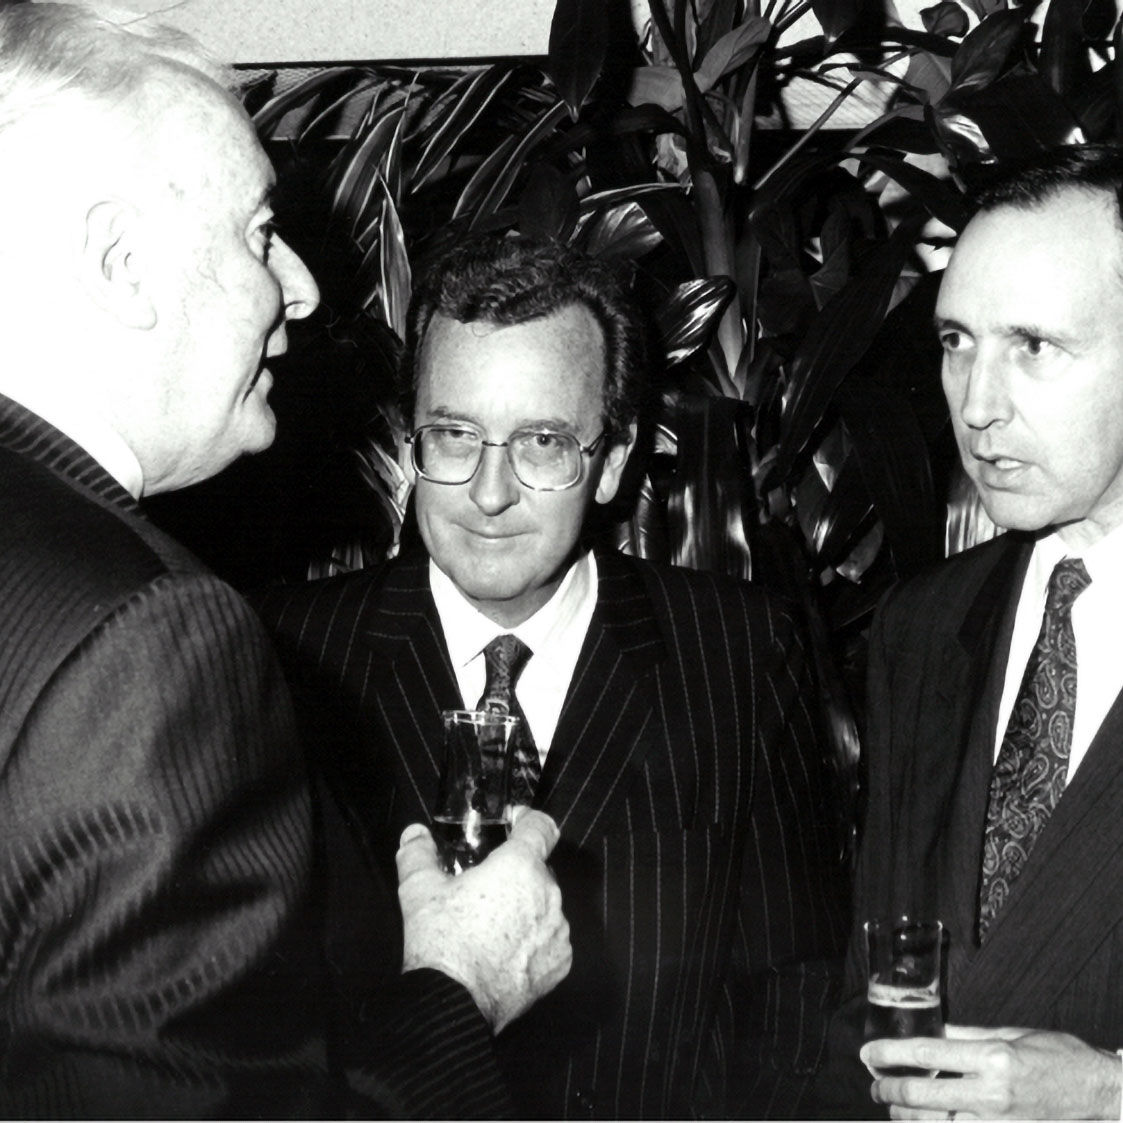 L to R: Gough Whitlam, James Fairfax, Paul Keating.